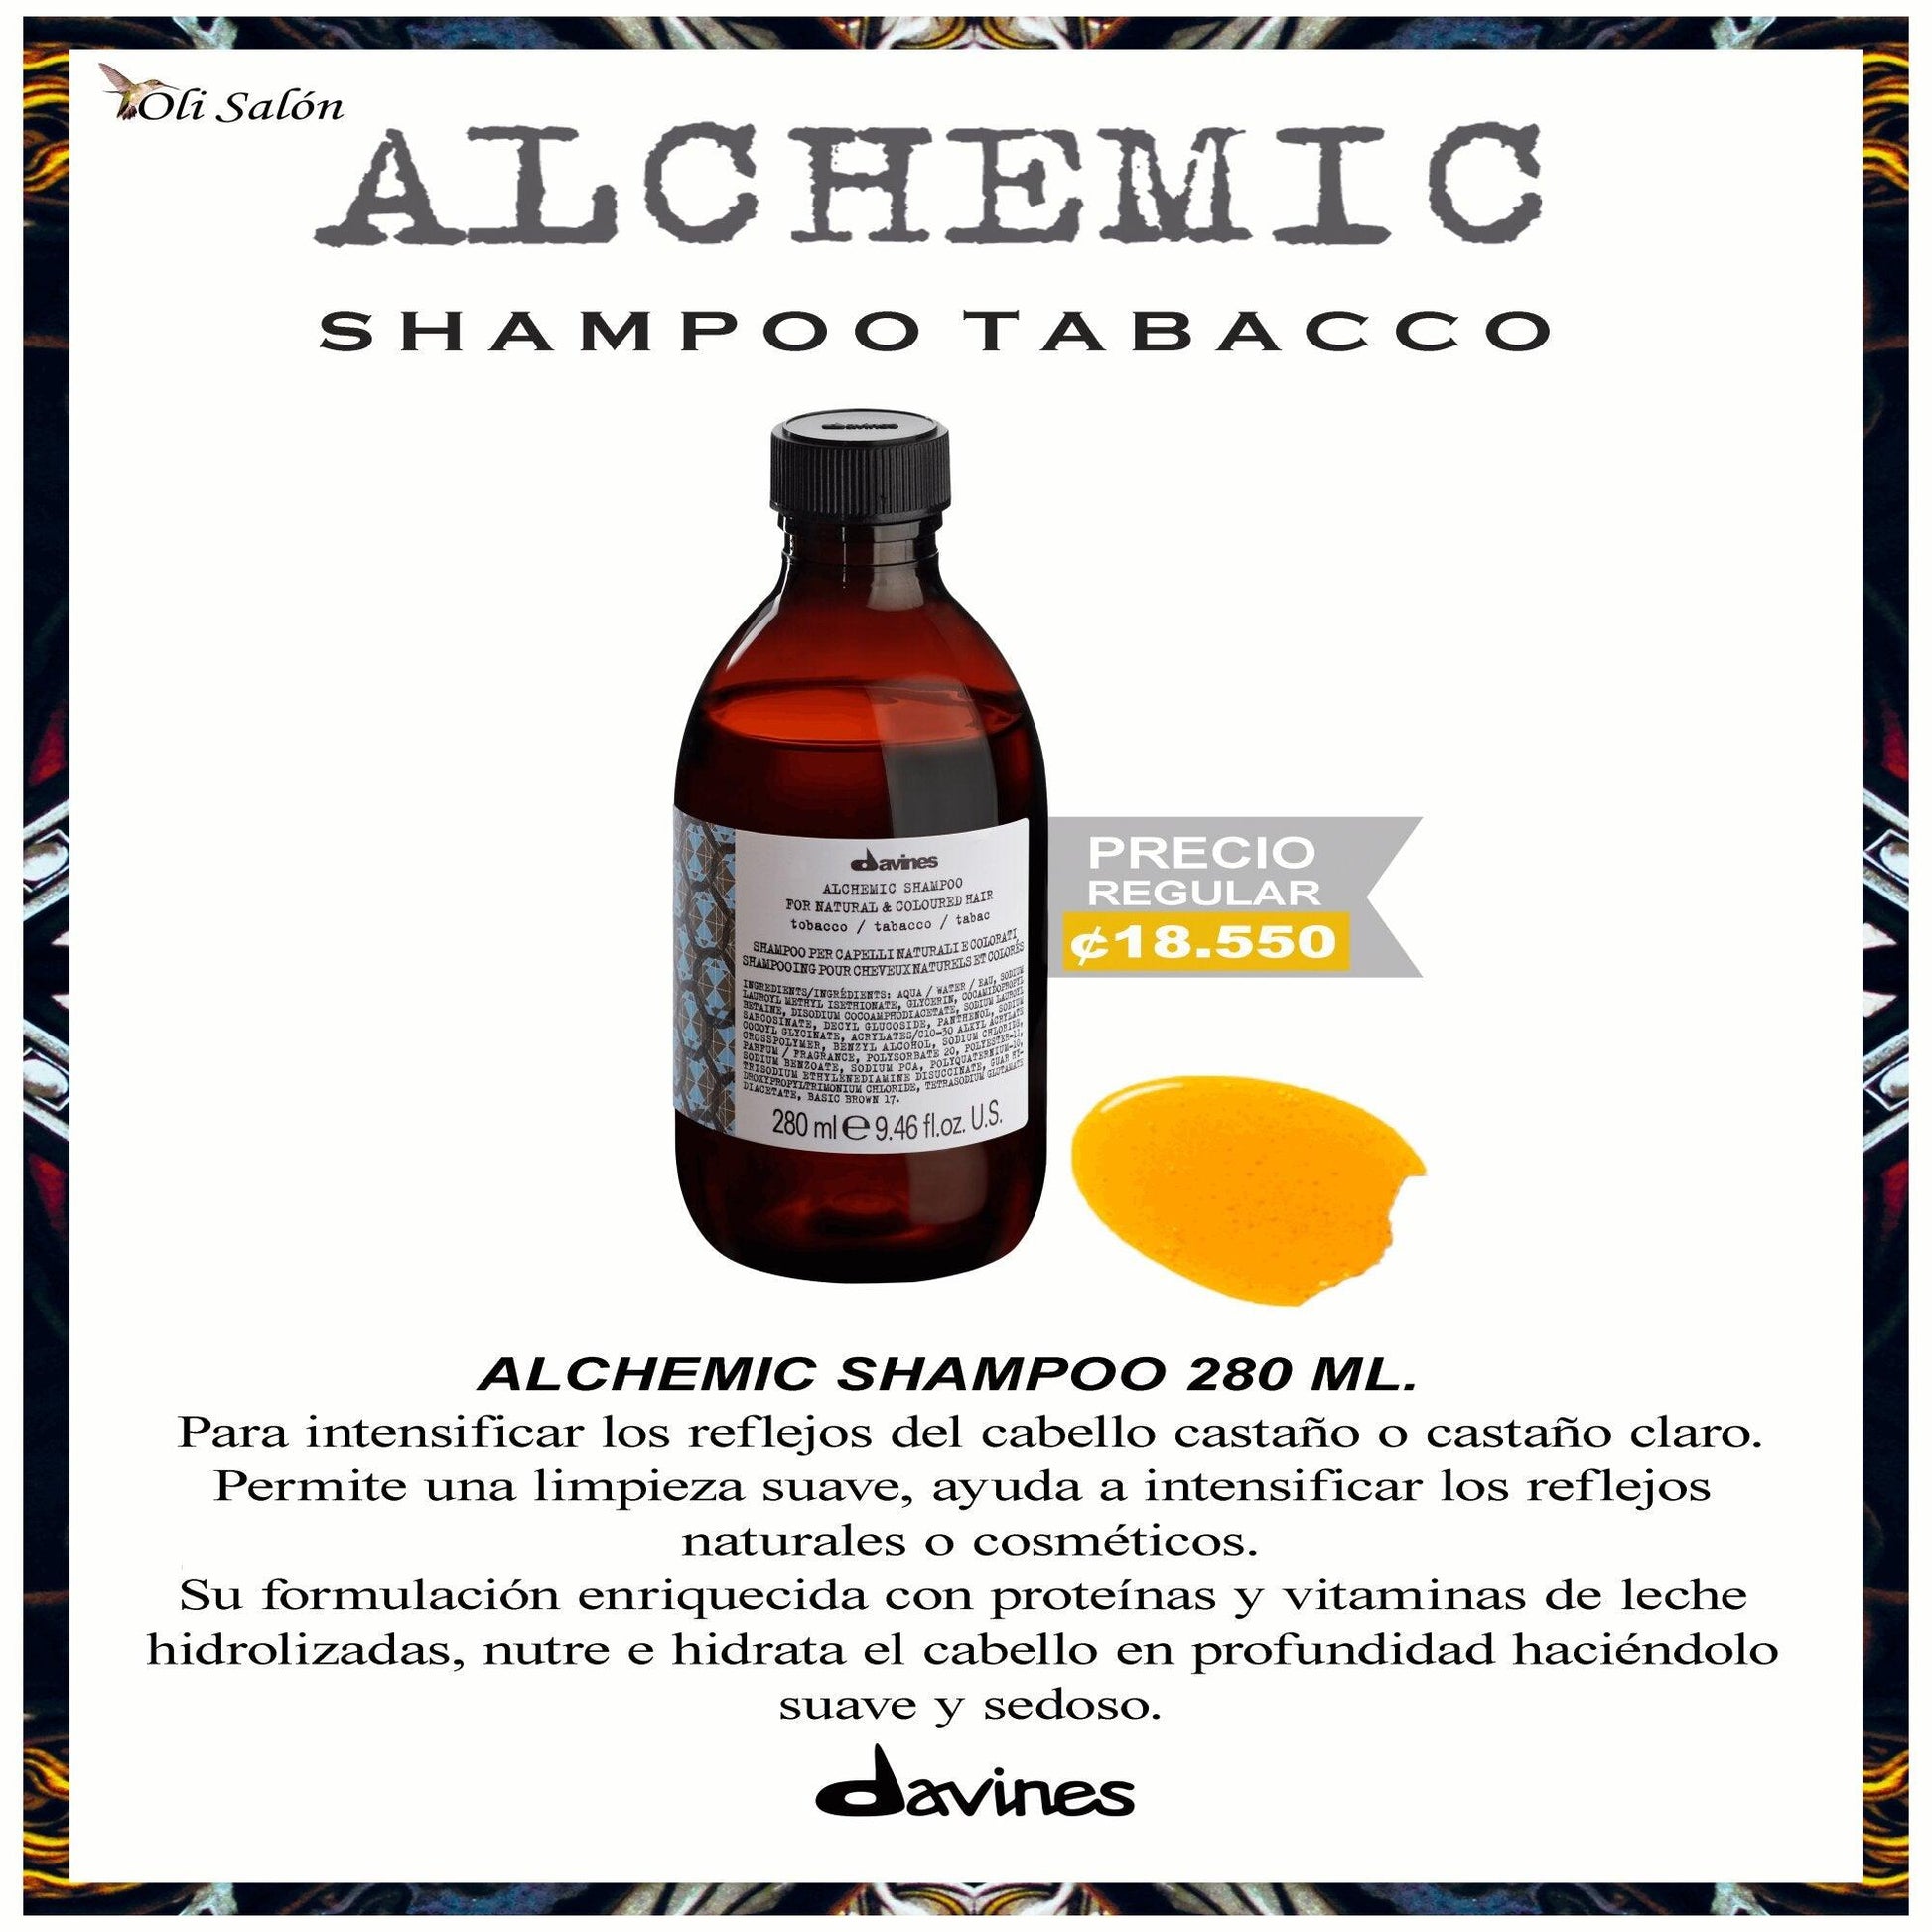 Alchemic Shampoo Tobacco - GOLDFARMACI